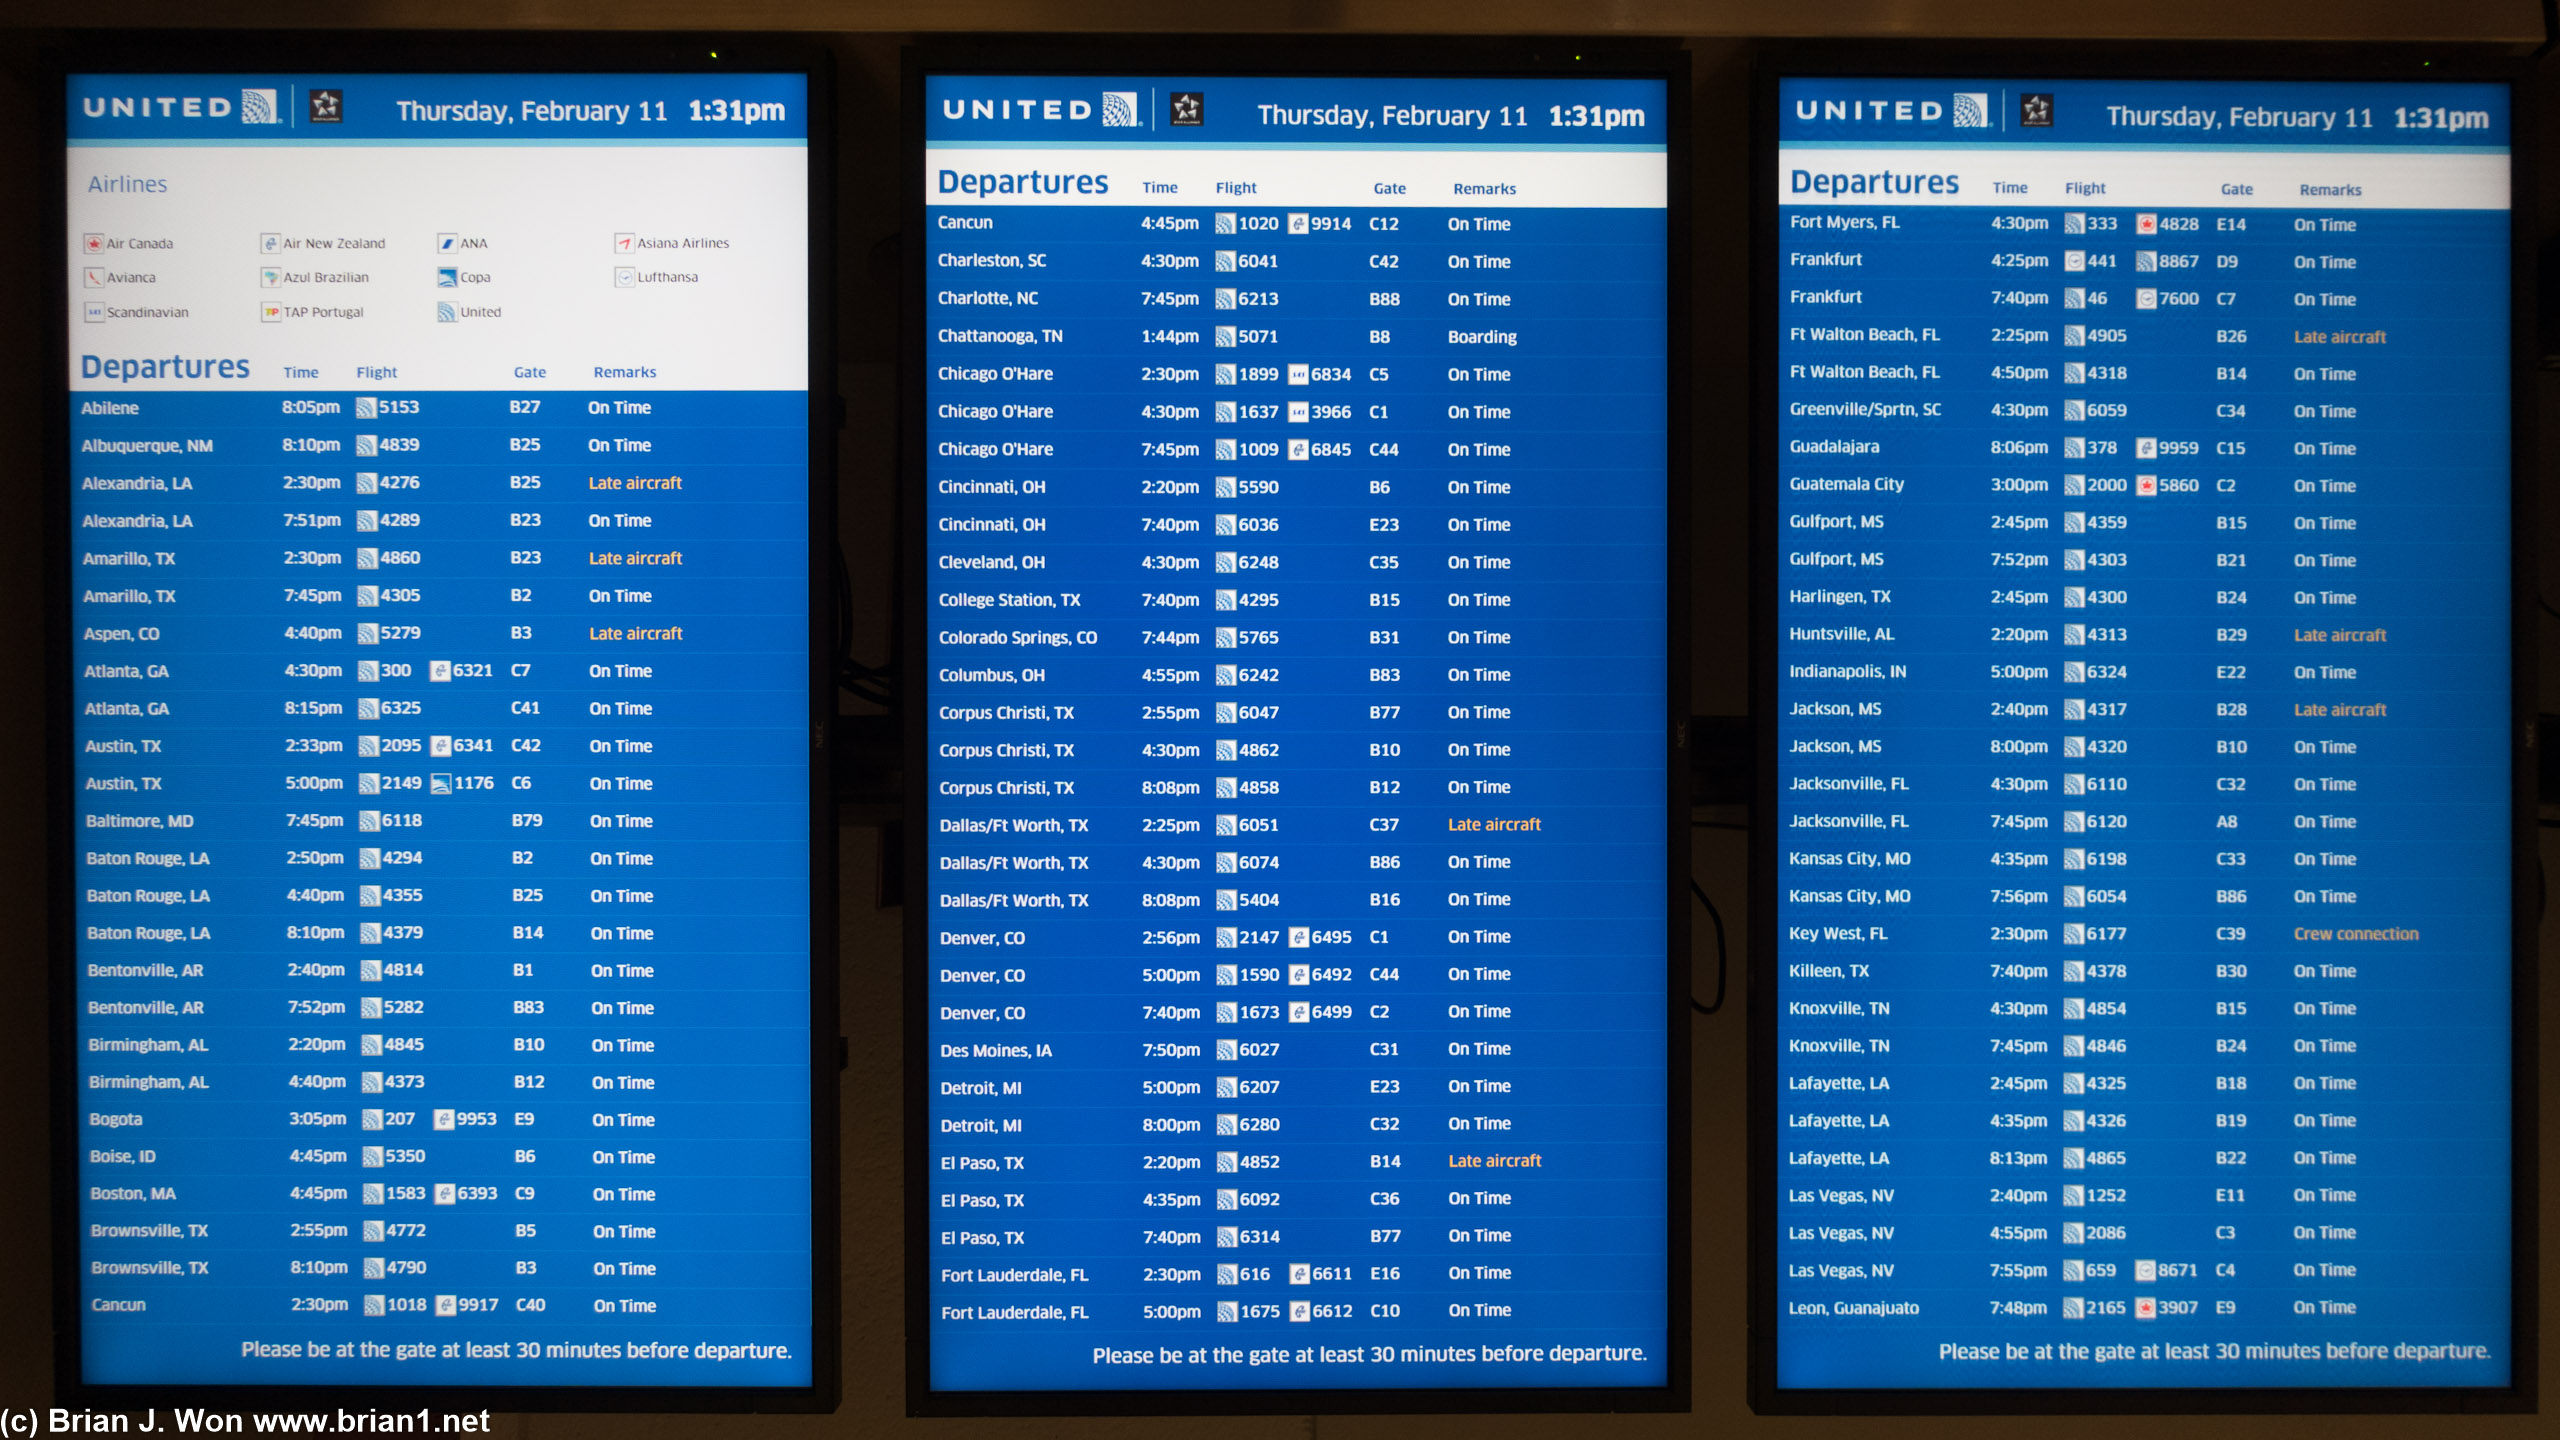 6 screen's full of flights!